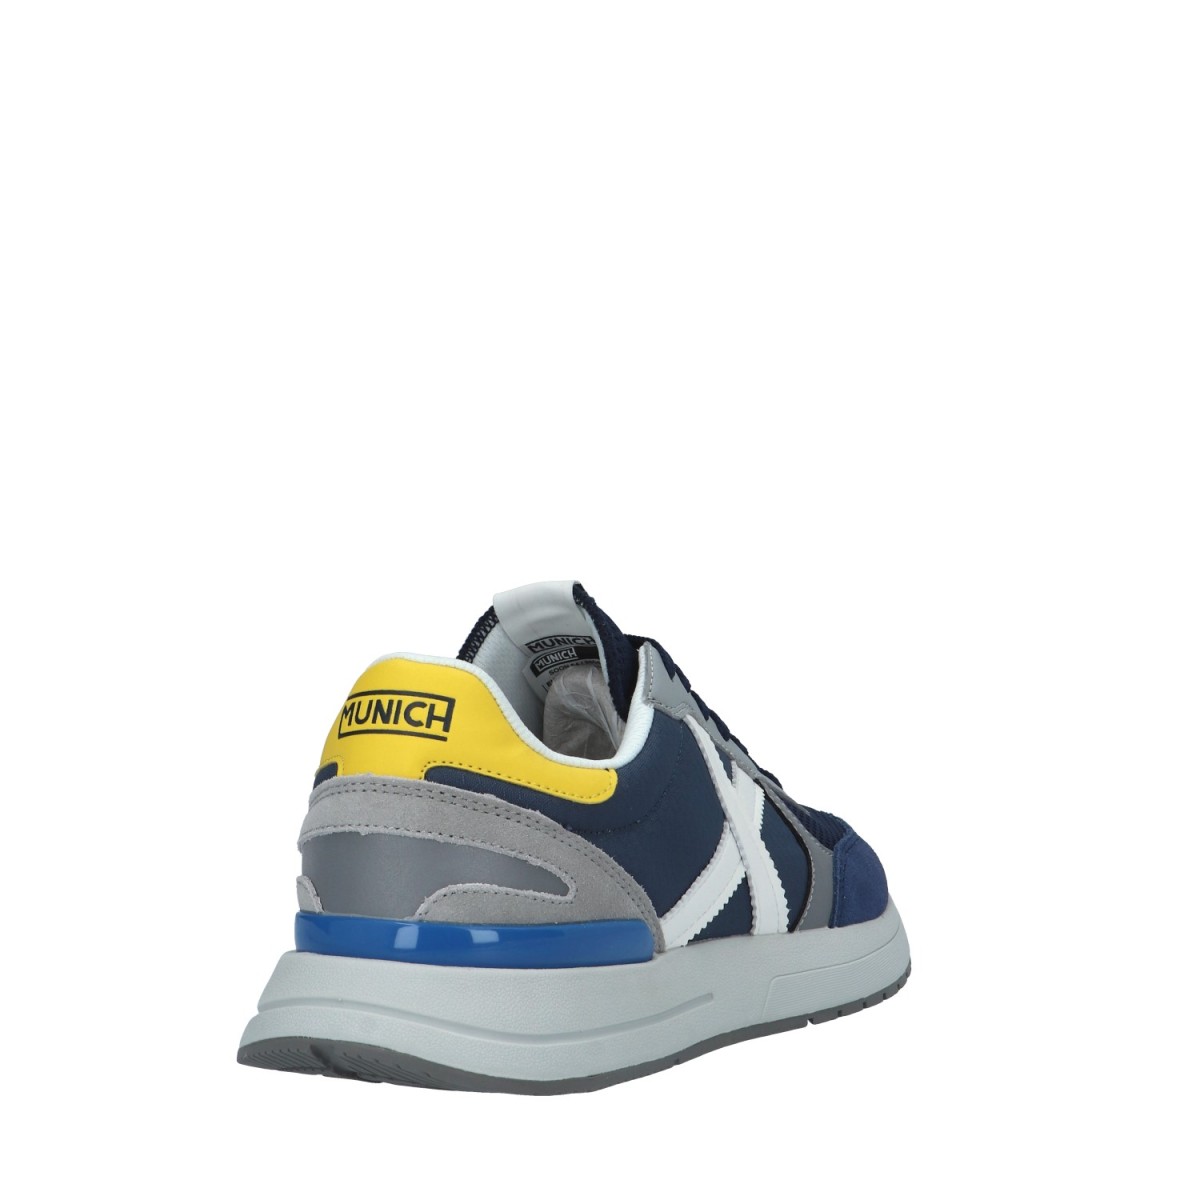 Munich Sneaker Blu/bianco Gomma 8904054